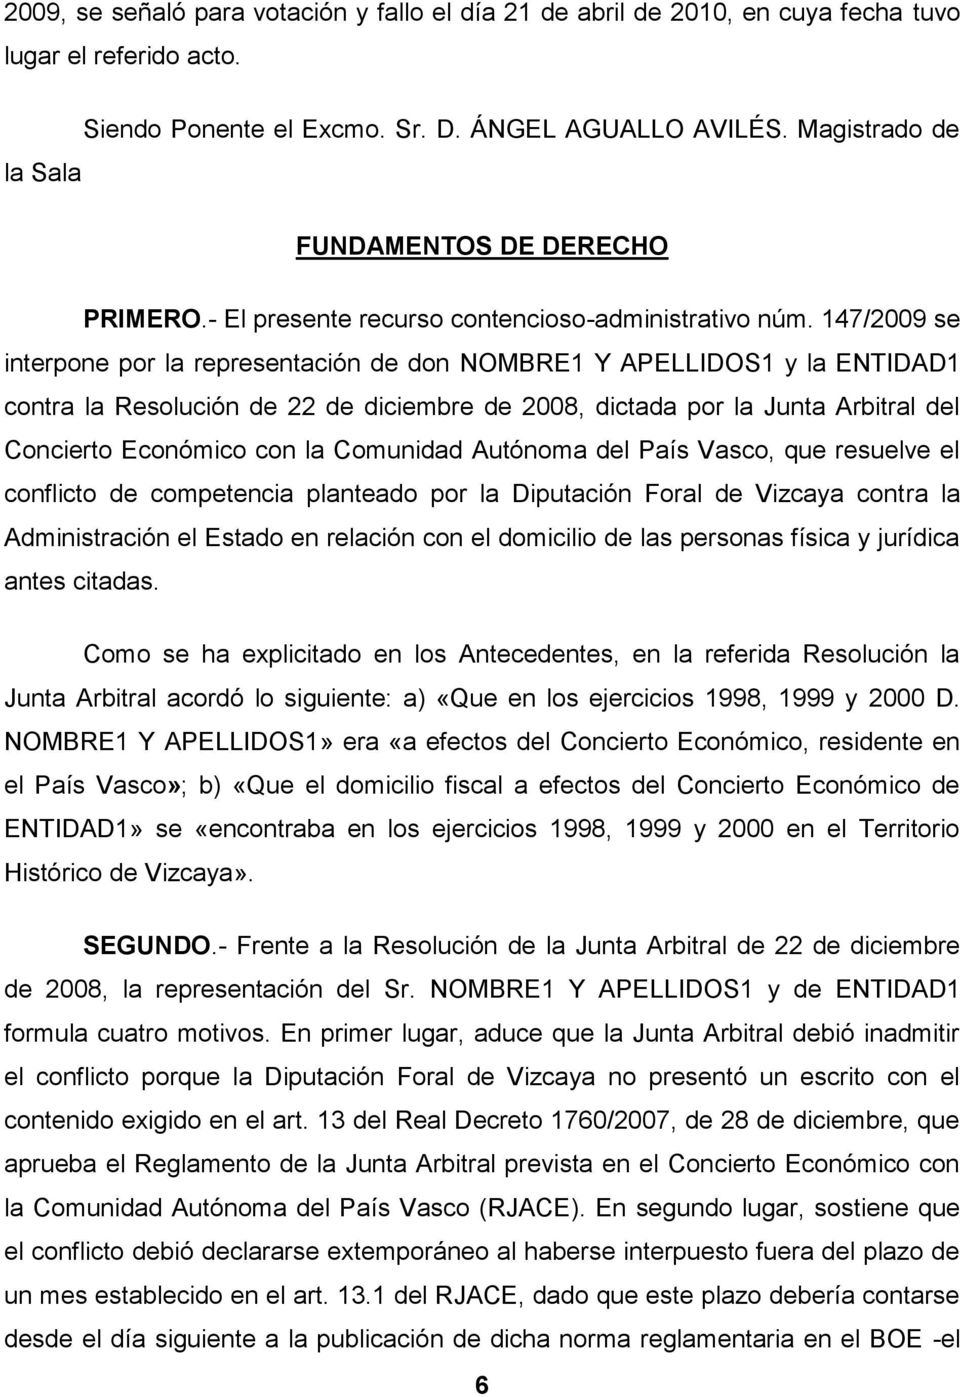 147/2009 se interpone por la representación de don NOMBRE1 Y APELLIDOS1 y la ENTIDAD1 contra la Resolución de 22 de diciembre de 2008, dictada por la Junta Arbitral del Concierto Económico con la